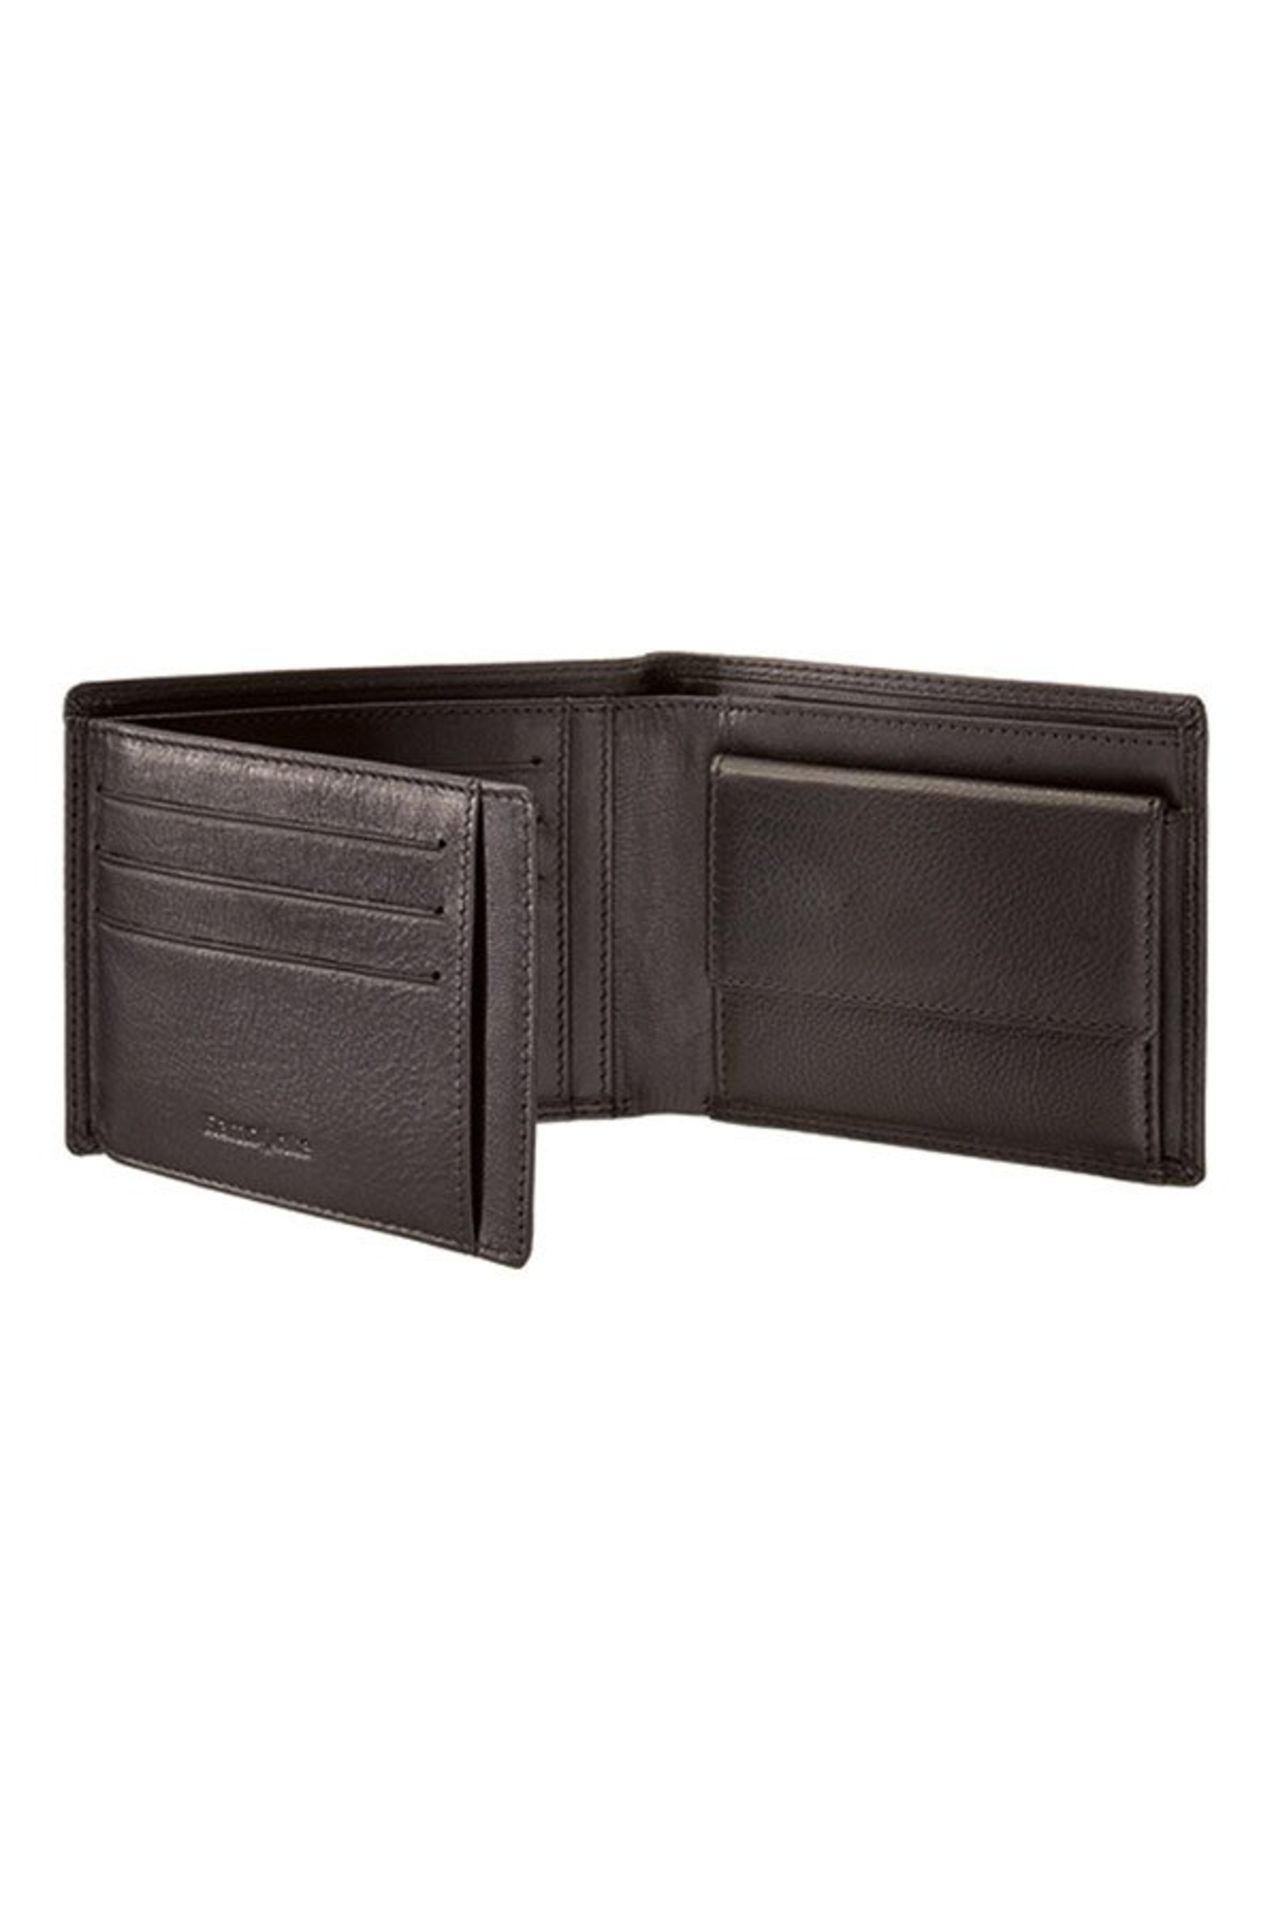 V Brand New Samsonite Gents Black Leather Wallet - 3 Credit Card Slots - Zip Pocket Section - 2 Note